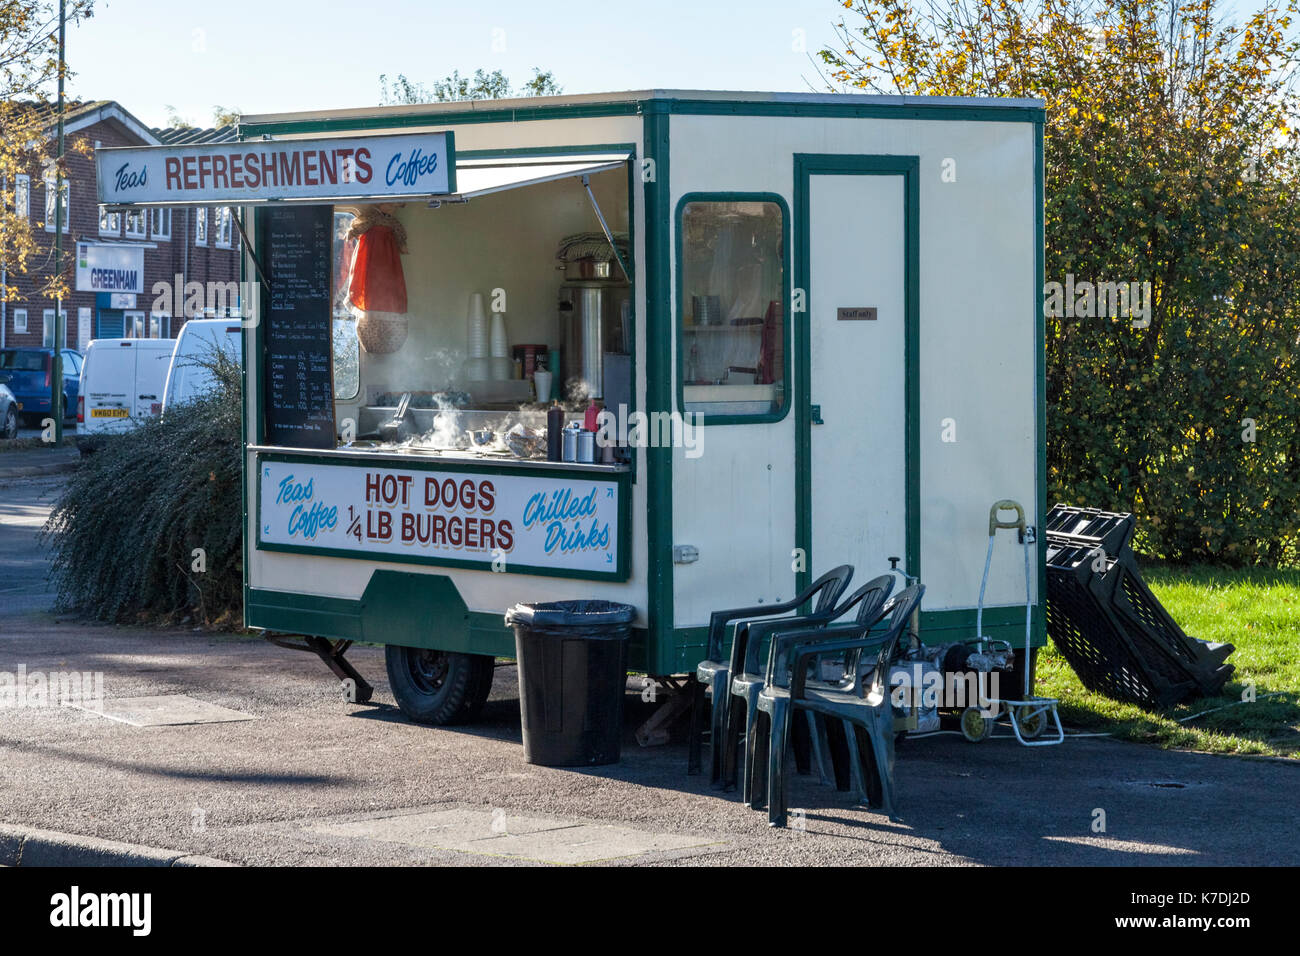 Am Straßenrand Catering: mobile Erfrischung trailer Verkauf von warmen Speisen, Getränke und andere Erfrischungen auf einer Straße in Nottingham, England, Großbritannien Stockfoto